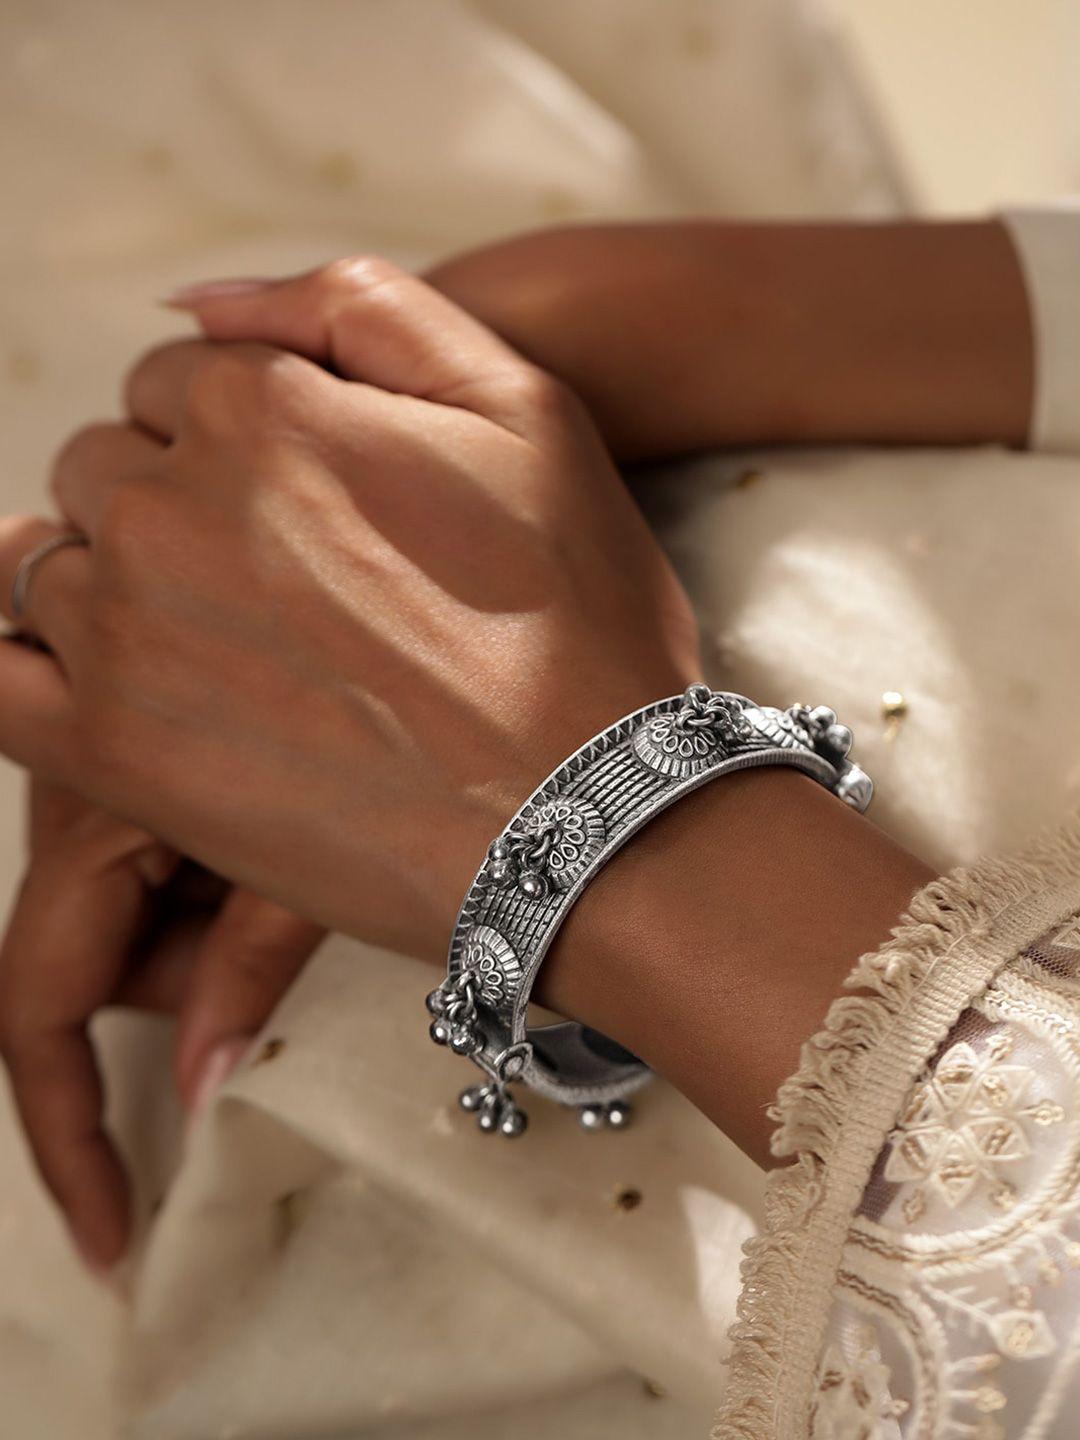 rubans rhodium-plated bangle-style bracelet